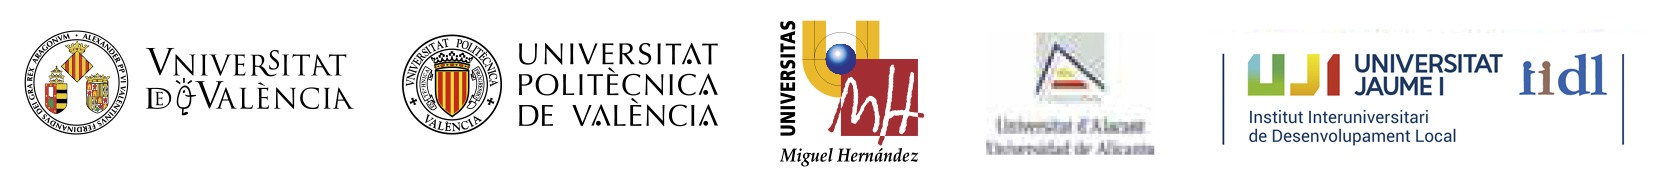 Logos universitats